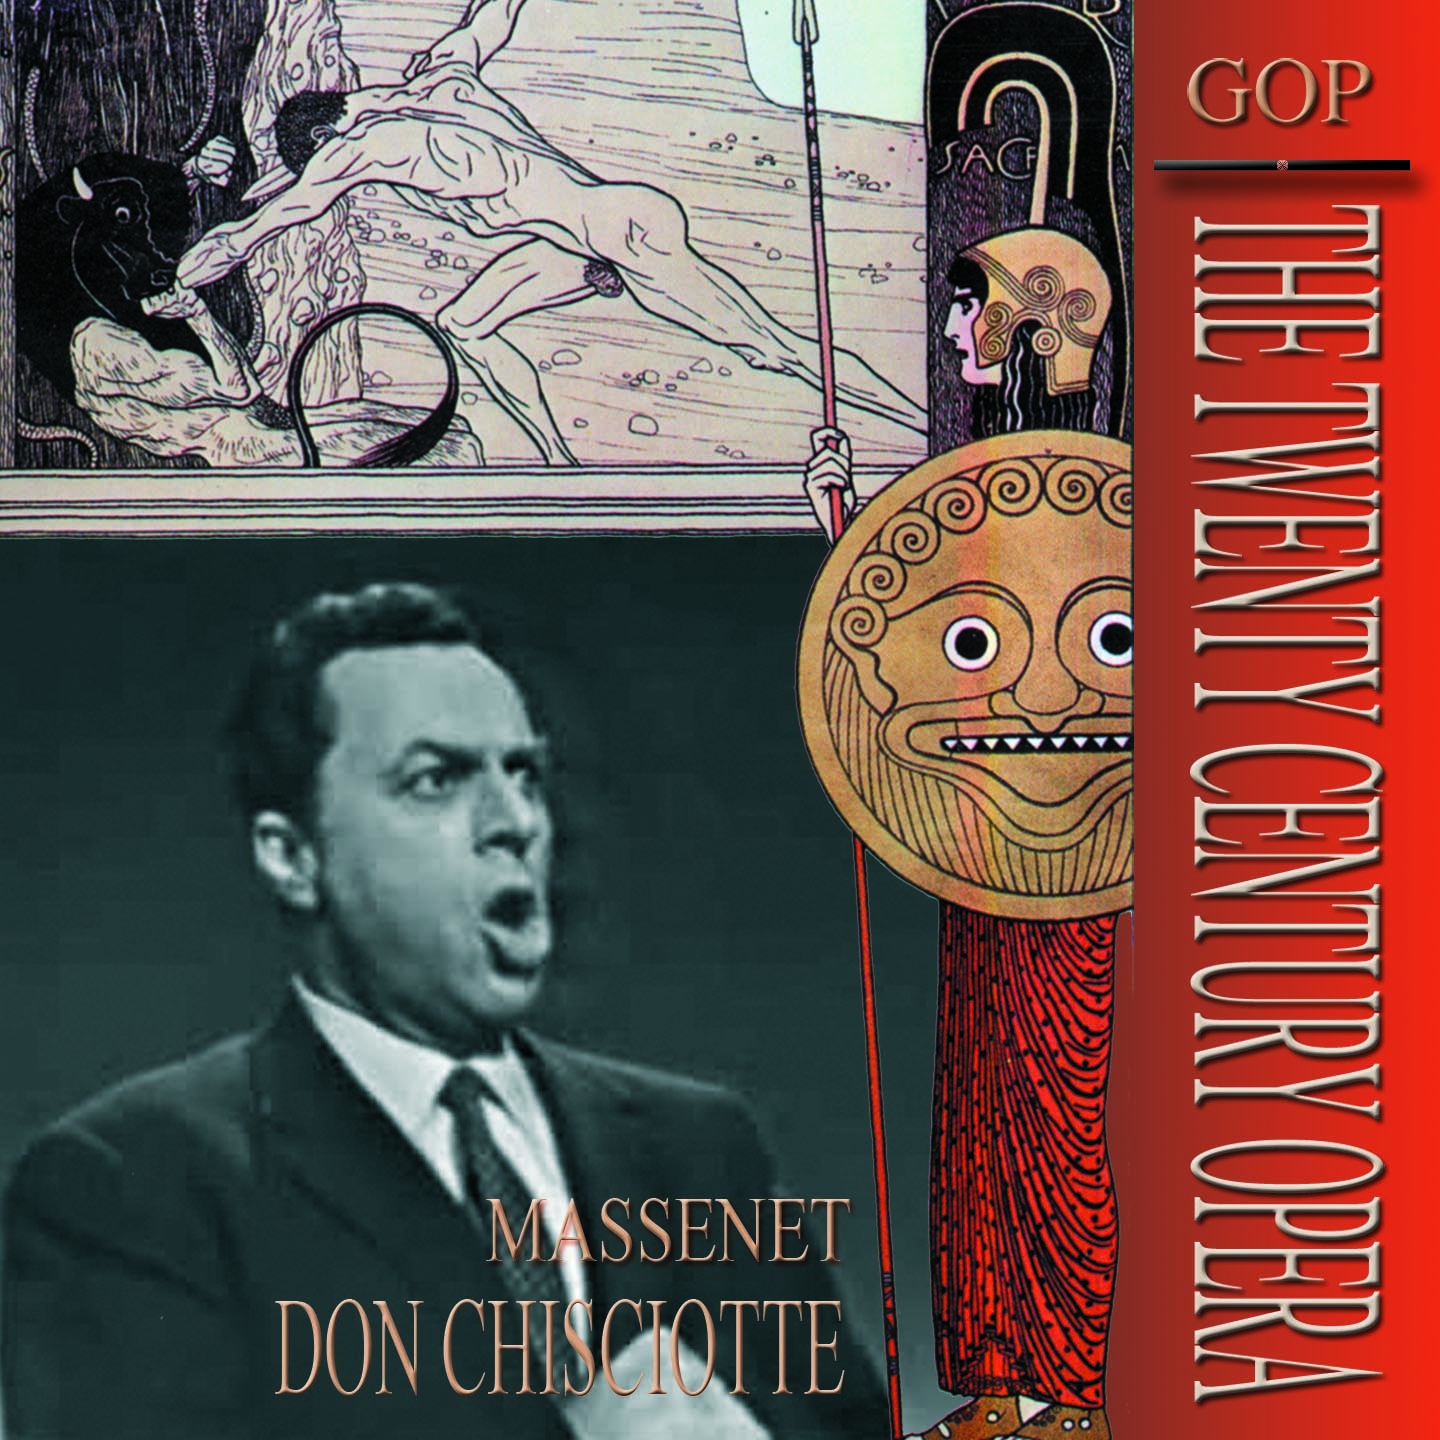 Don Chisciotte, Act III: " Proprio qui e la strada" Don Chisciotte, Sancio